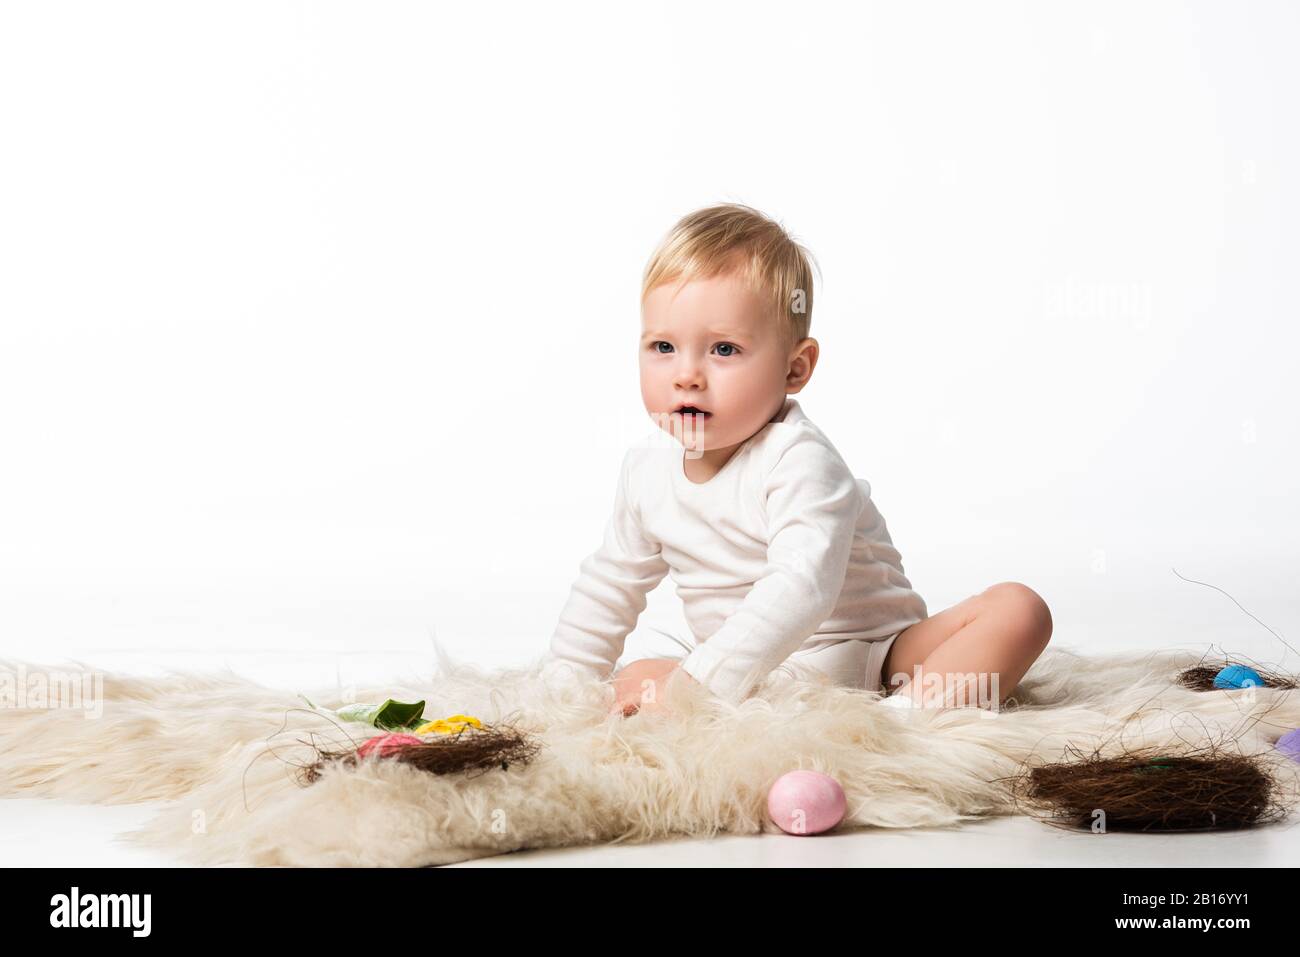 Kind mit offenem Mund, auf Pelz mit Nestern und ostereiern auf weißem Grund Stockfoto